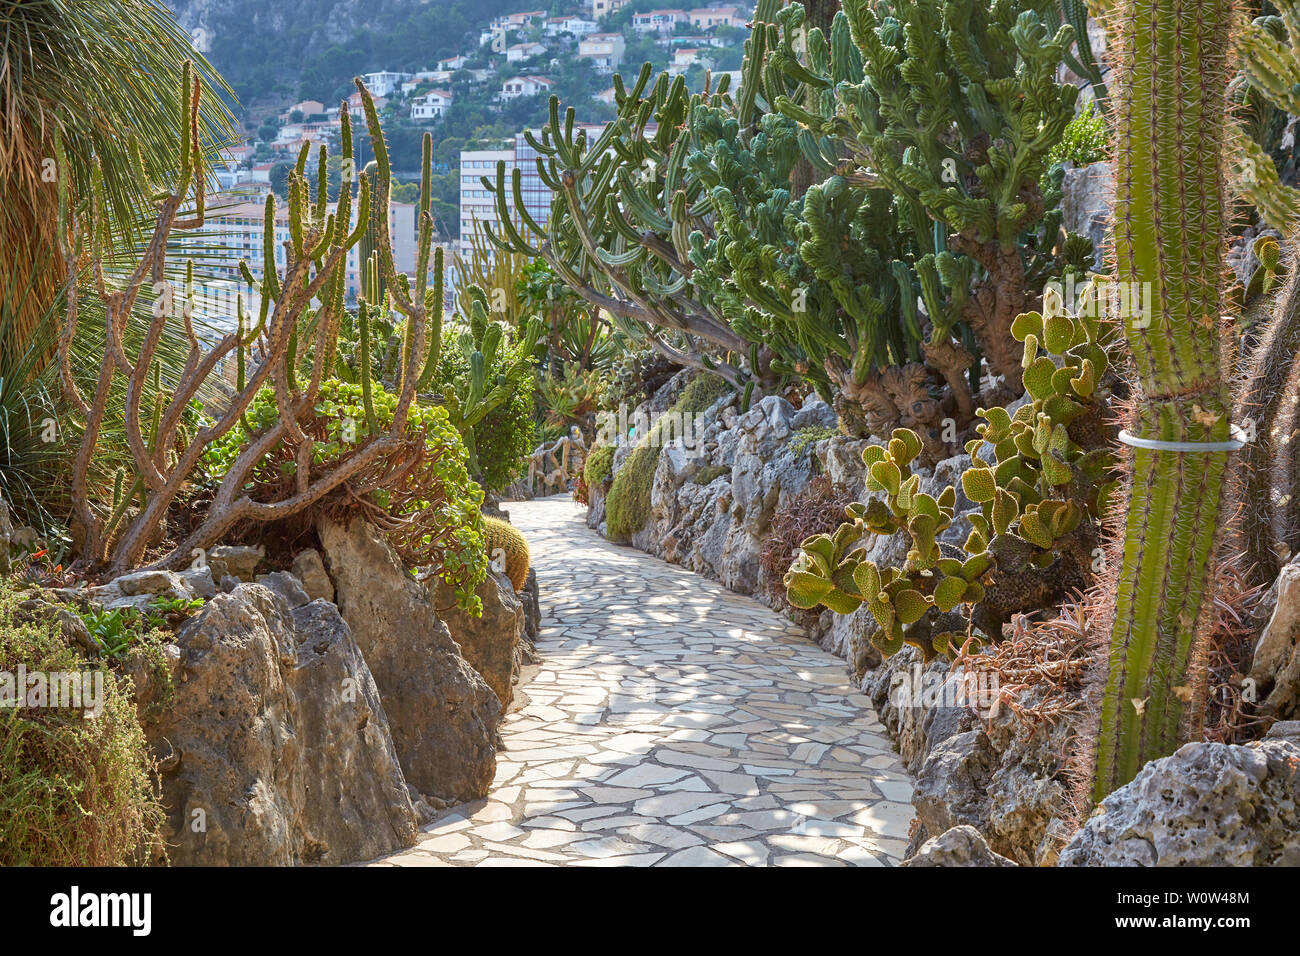 MONTE CARLO, Monaco - Agosto 20, 2016: el camino del jardín exótico con raras plantas suculentas en un día soleado de verano en Montecarlo, Mónaco. Foto de stock